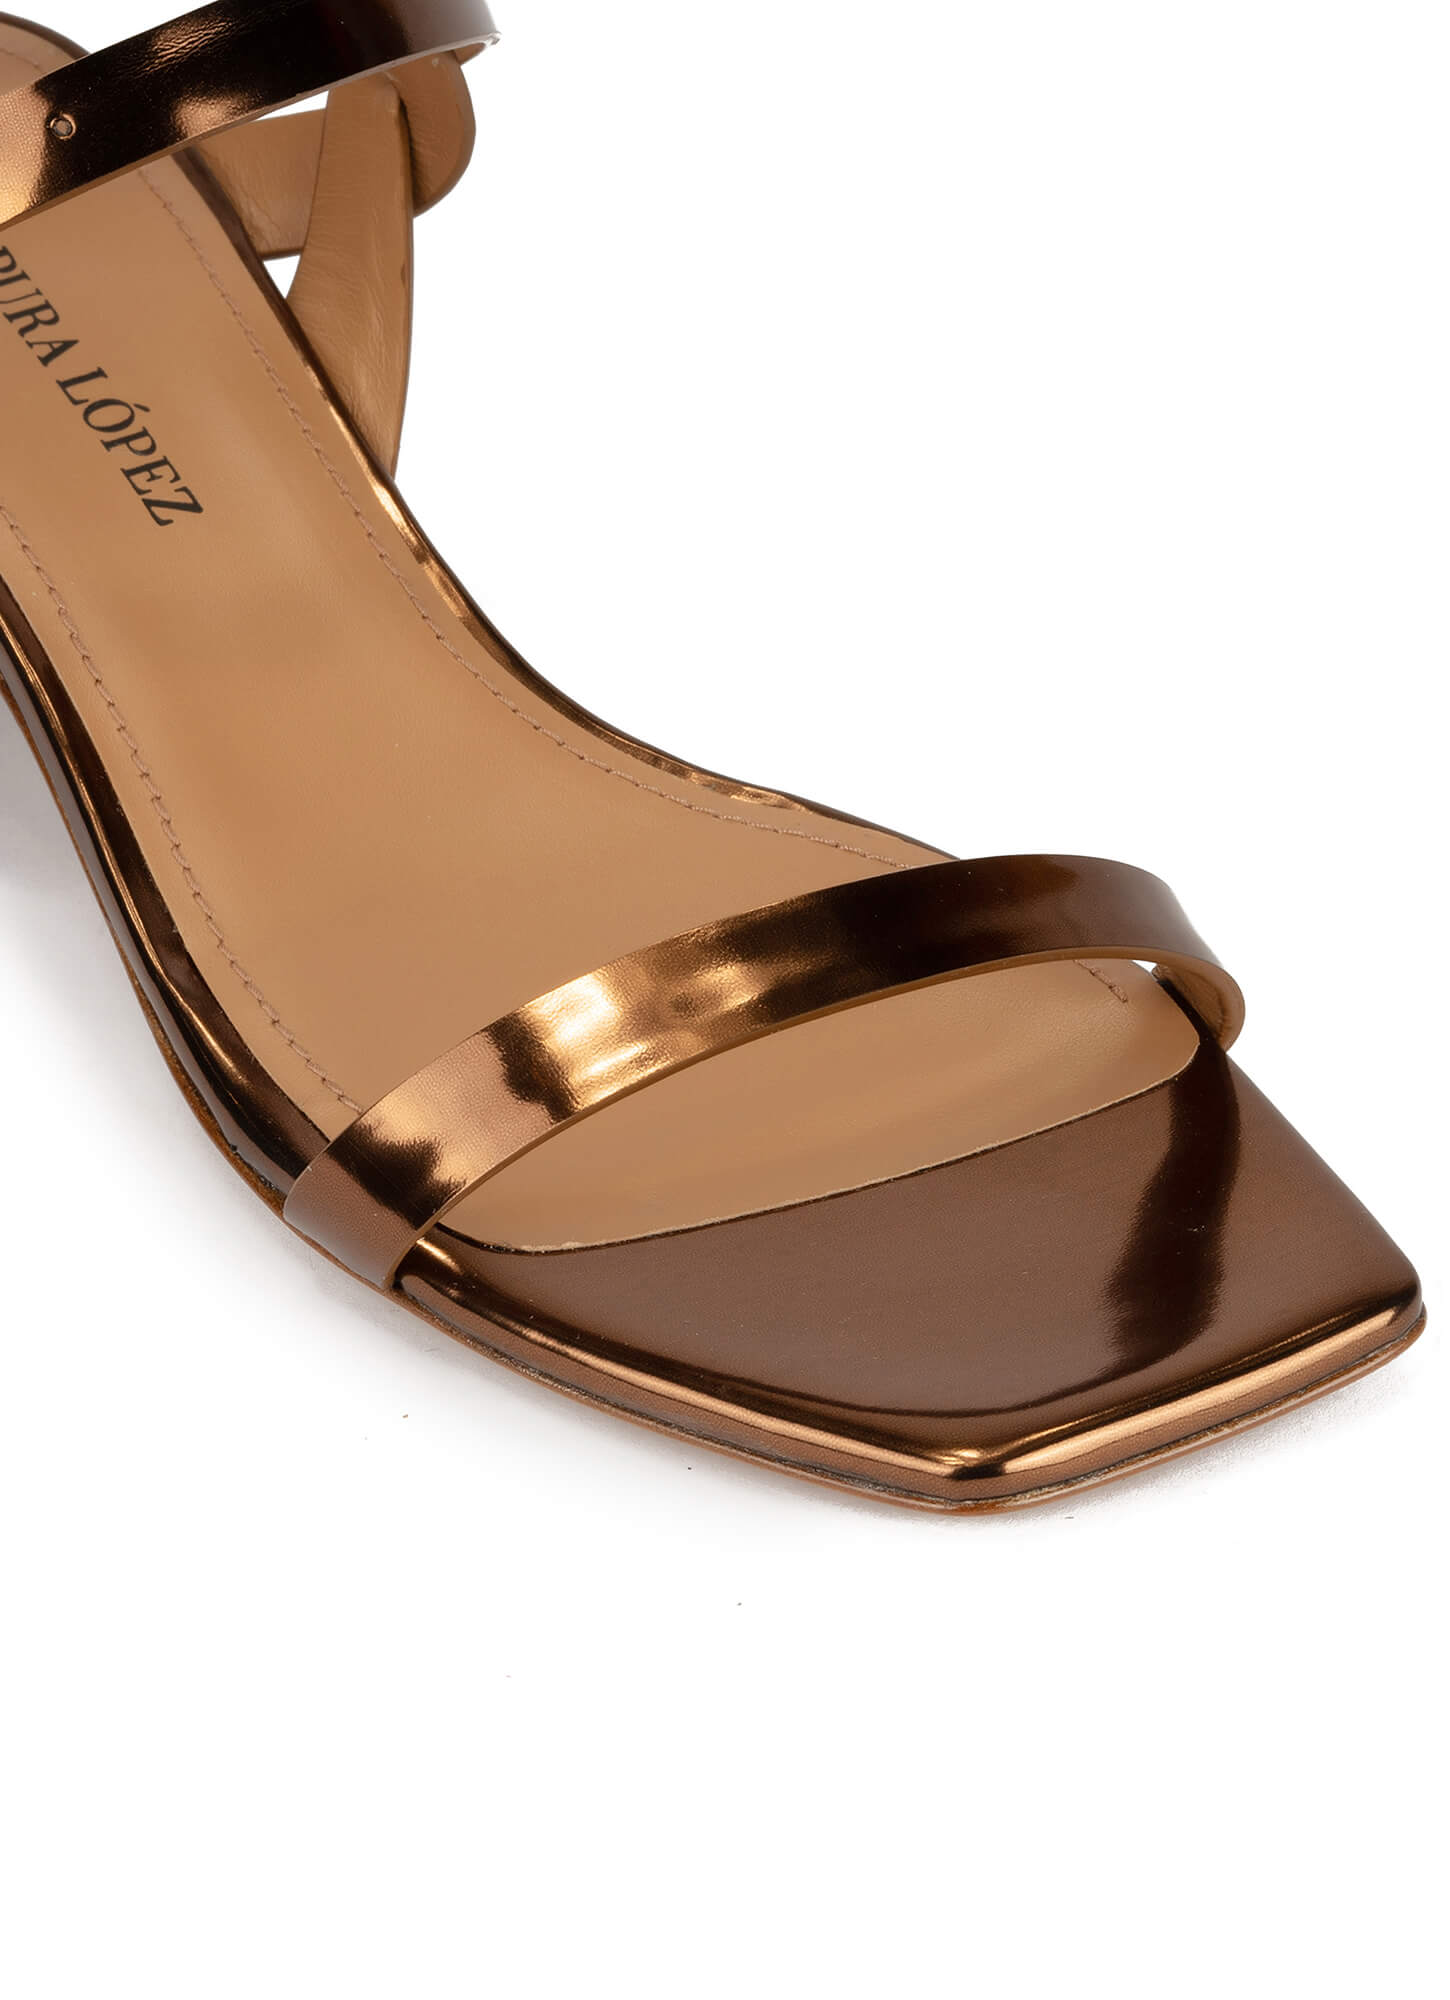 bronze sandal heels